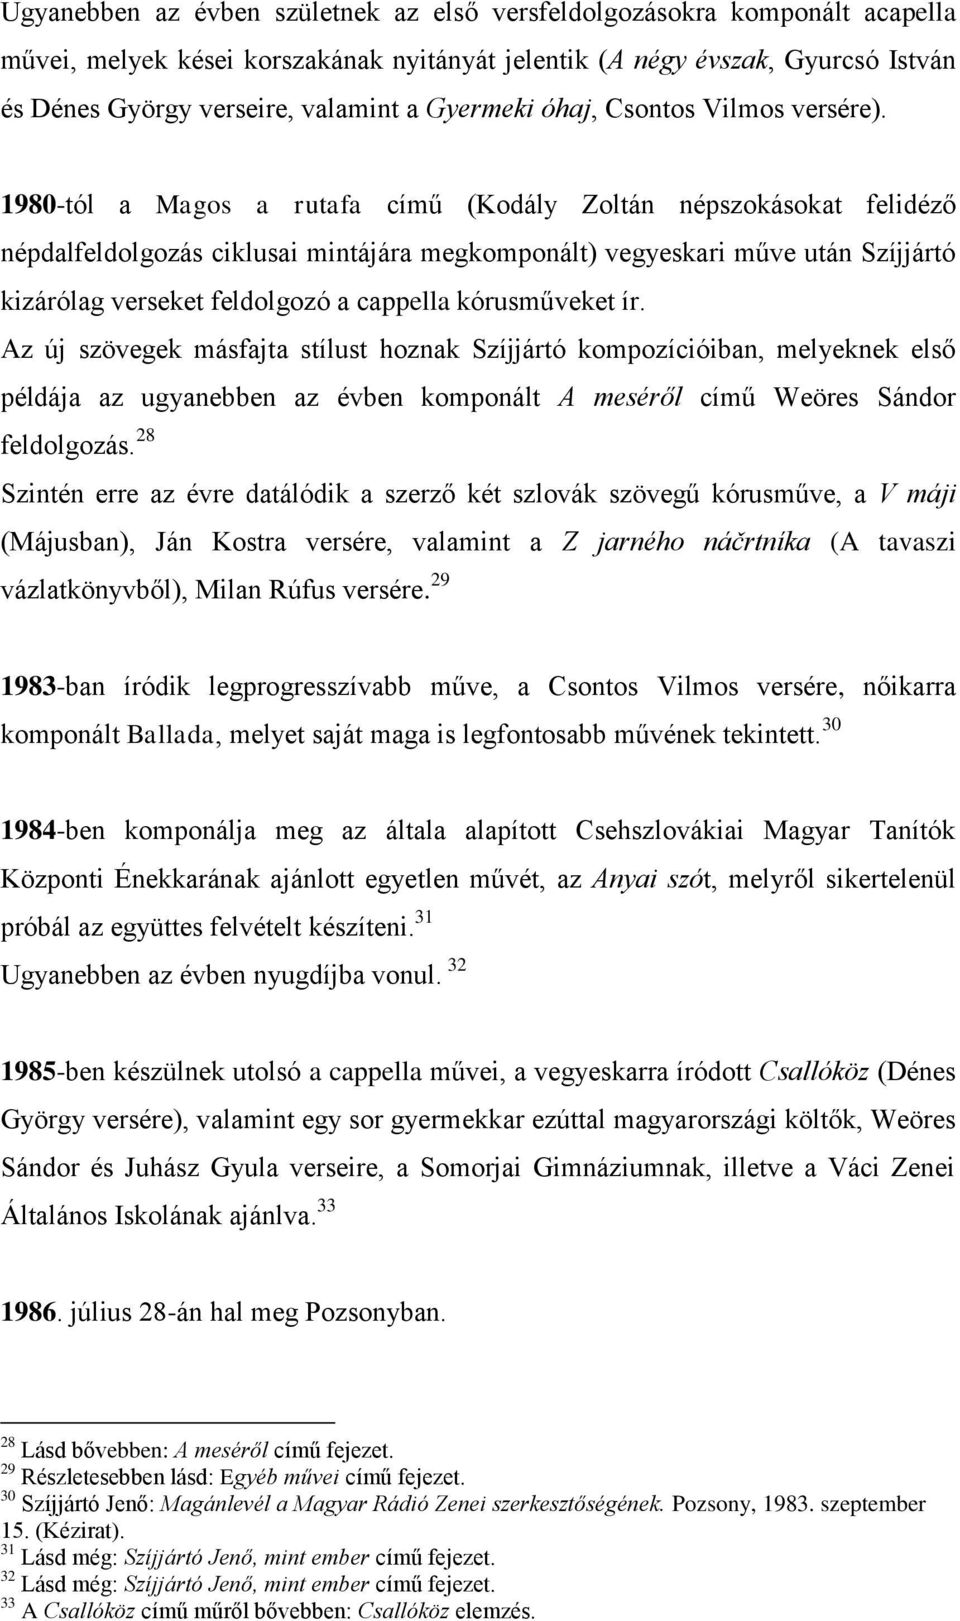 1980-tól a Magos a rutafa című (Kodály Zoltán népszokásokat felidéző népdalfeldolgozás ciklusai mintájára megkomponált) vegyeskari műve után Szíjjártó kizárólag verseket feldolgozó a cappella